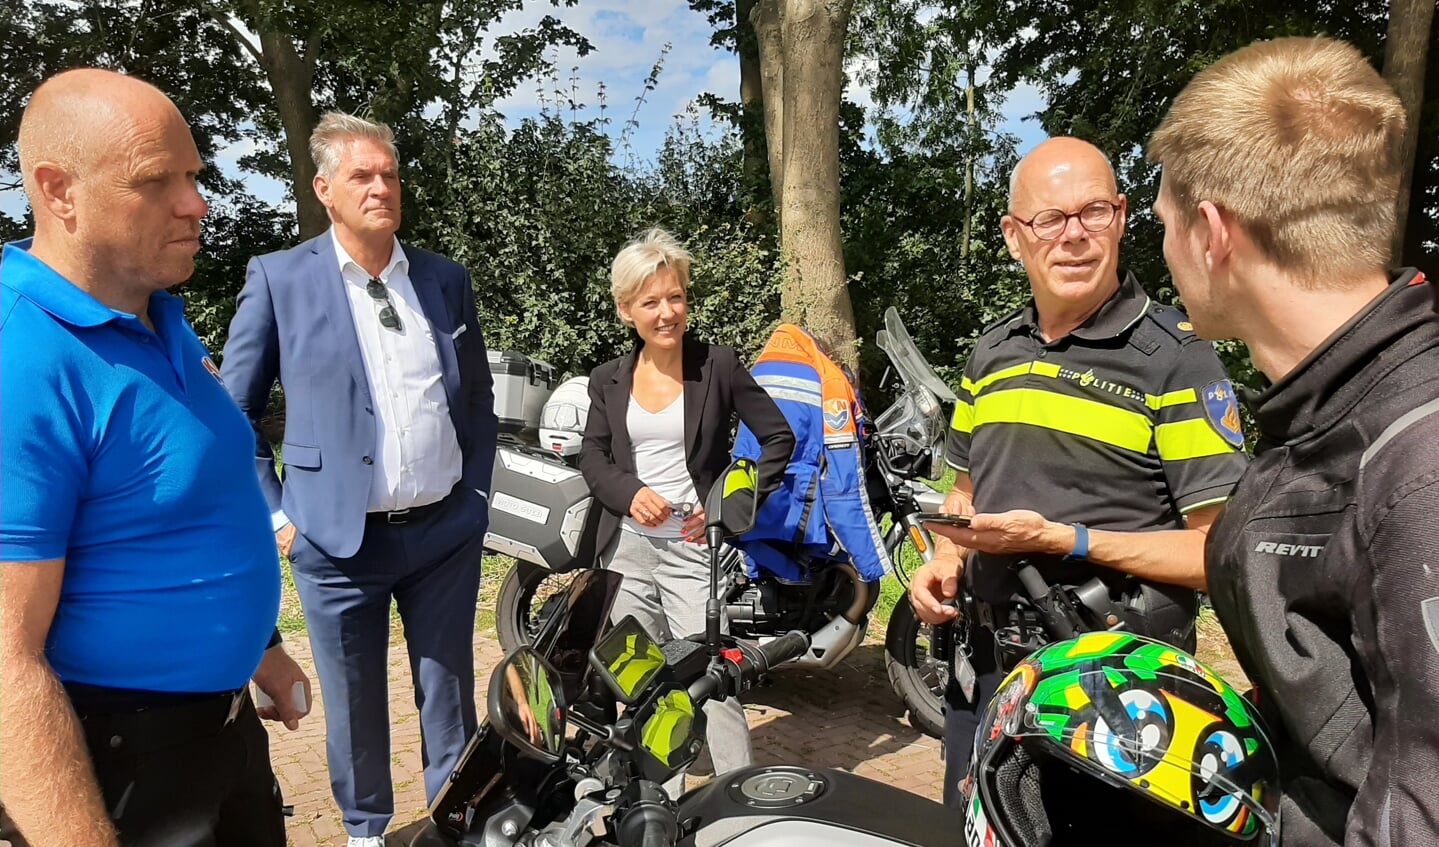 Burgemeester Frits Naafs van de Utrechtse Heuvelrug en burgemeester Iris Meerts van Wijk bij Duurstede waren bij die actie aanwezig